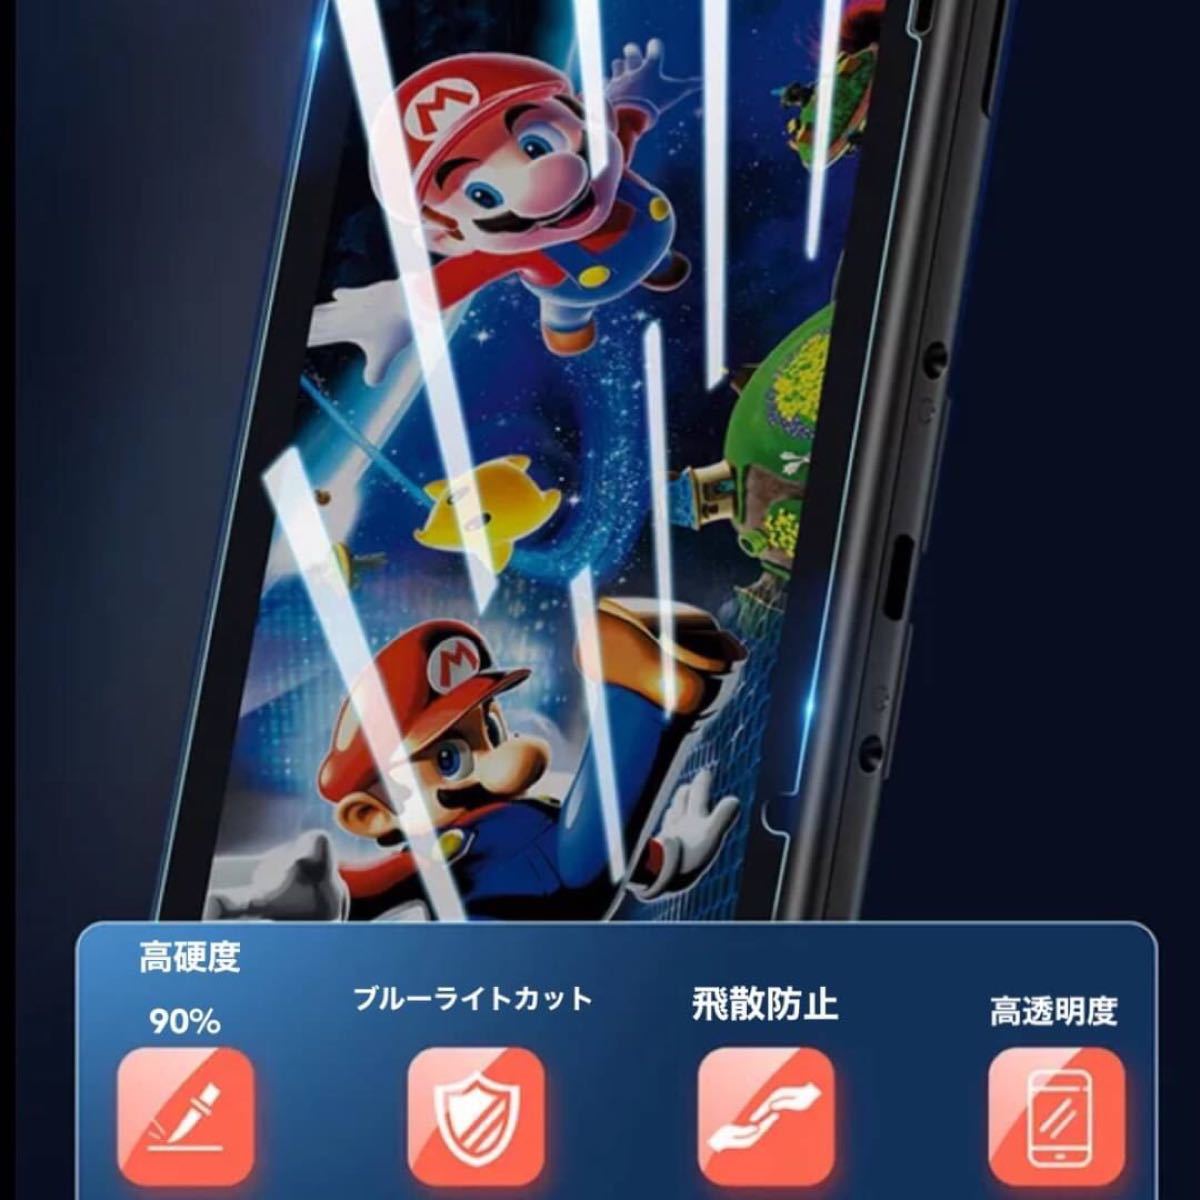 任天堂スイッチ Nintendo Switch 保護フィルム ガラスフィルム ブルーライトカット 液晶 保護 新品未使用 送料無料